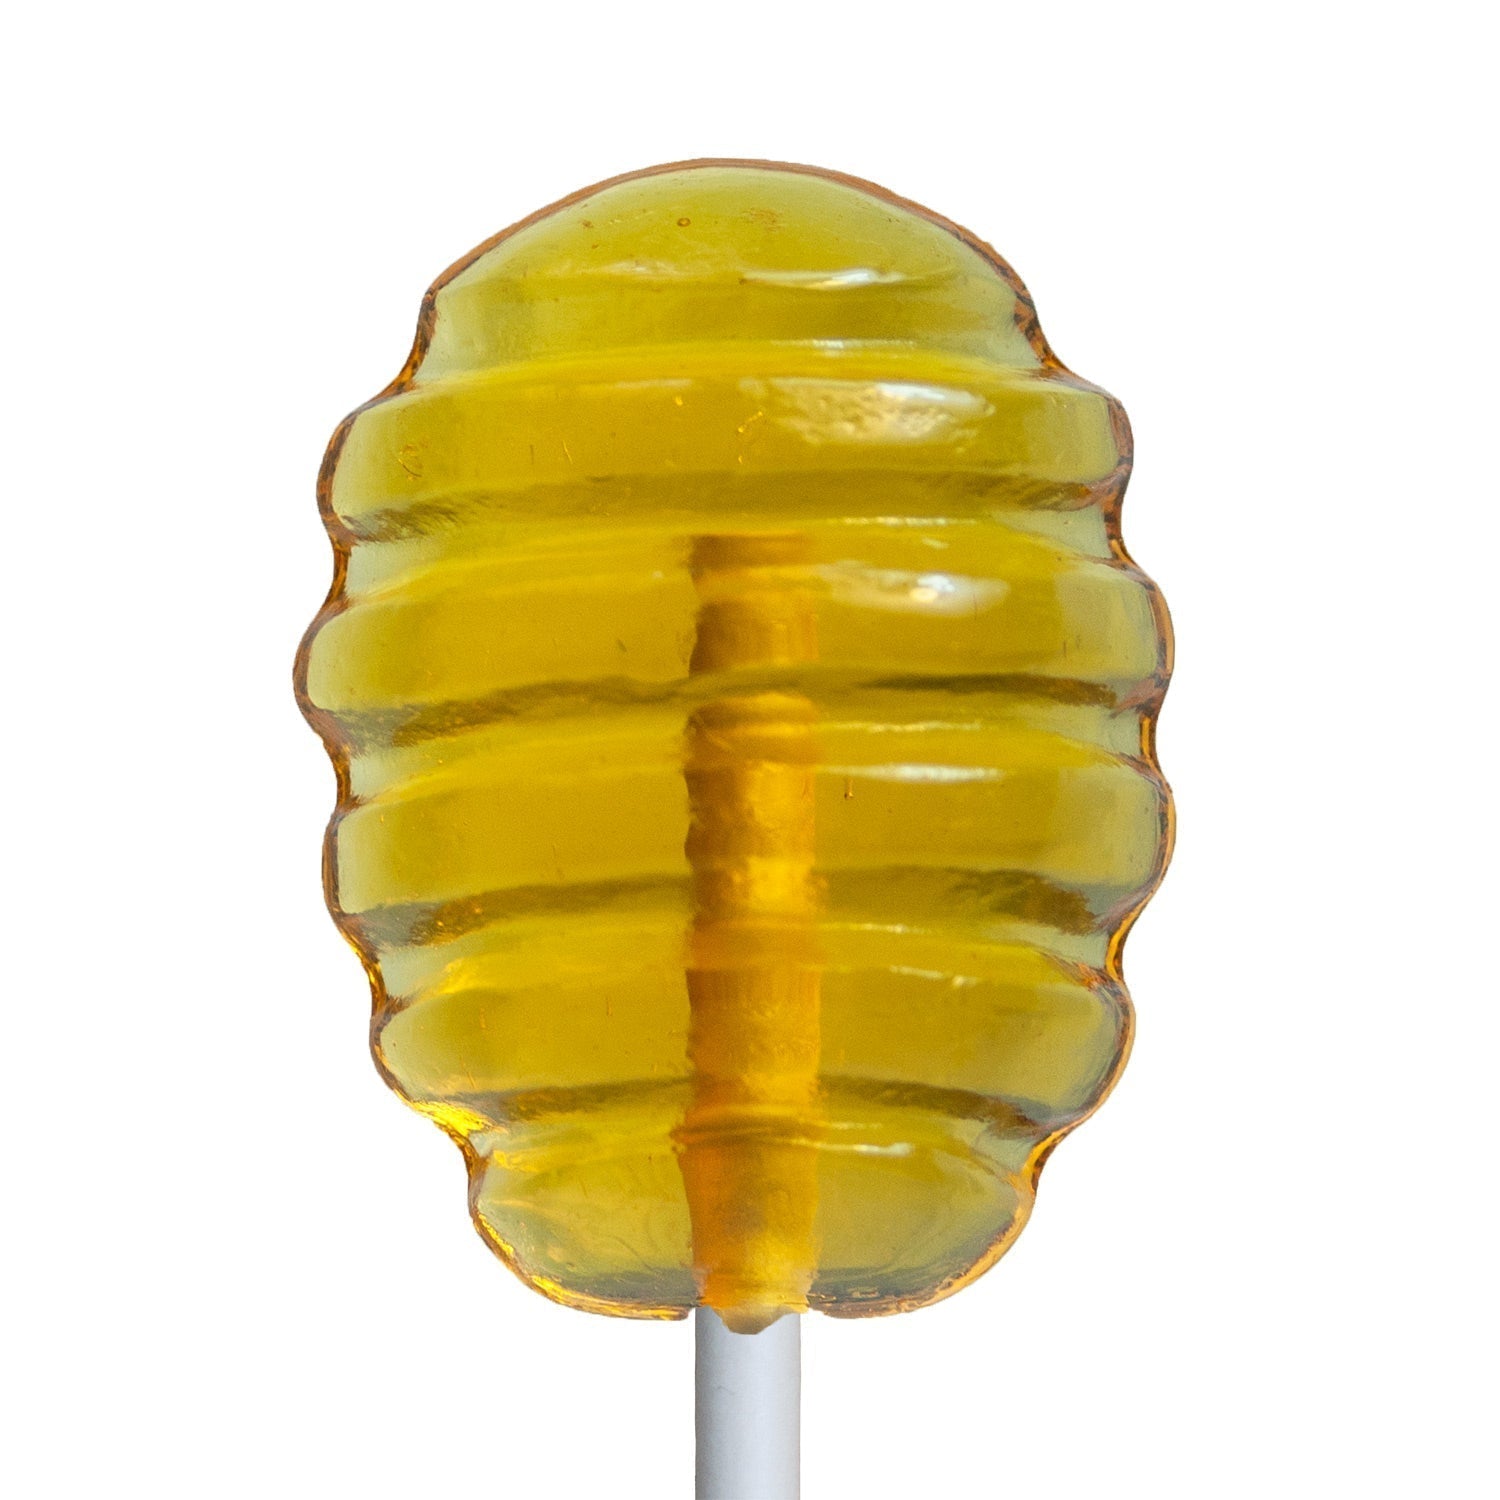 Honey Lollipops (on Honey Wands!) - Sprinkle Bakes